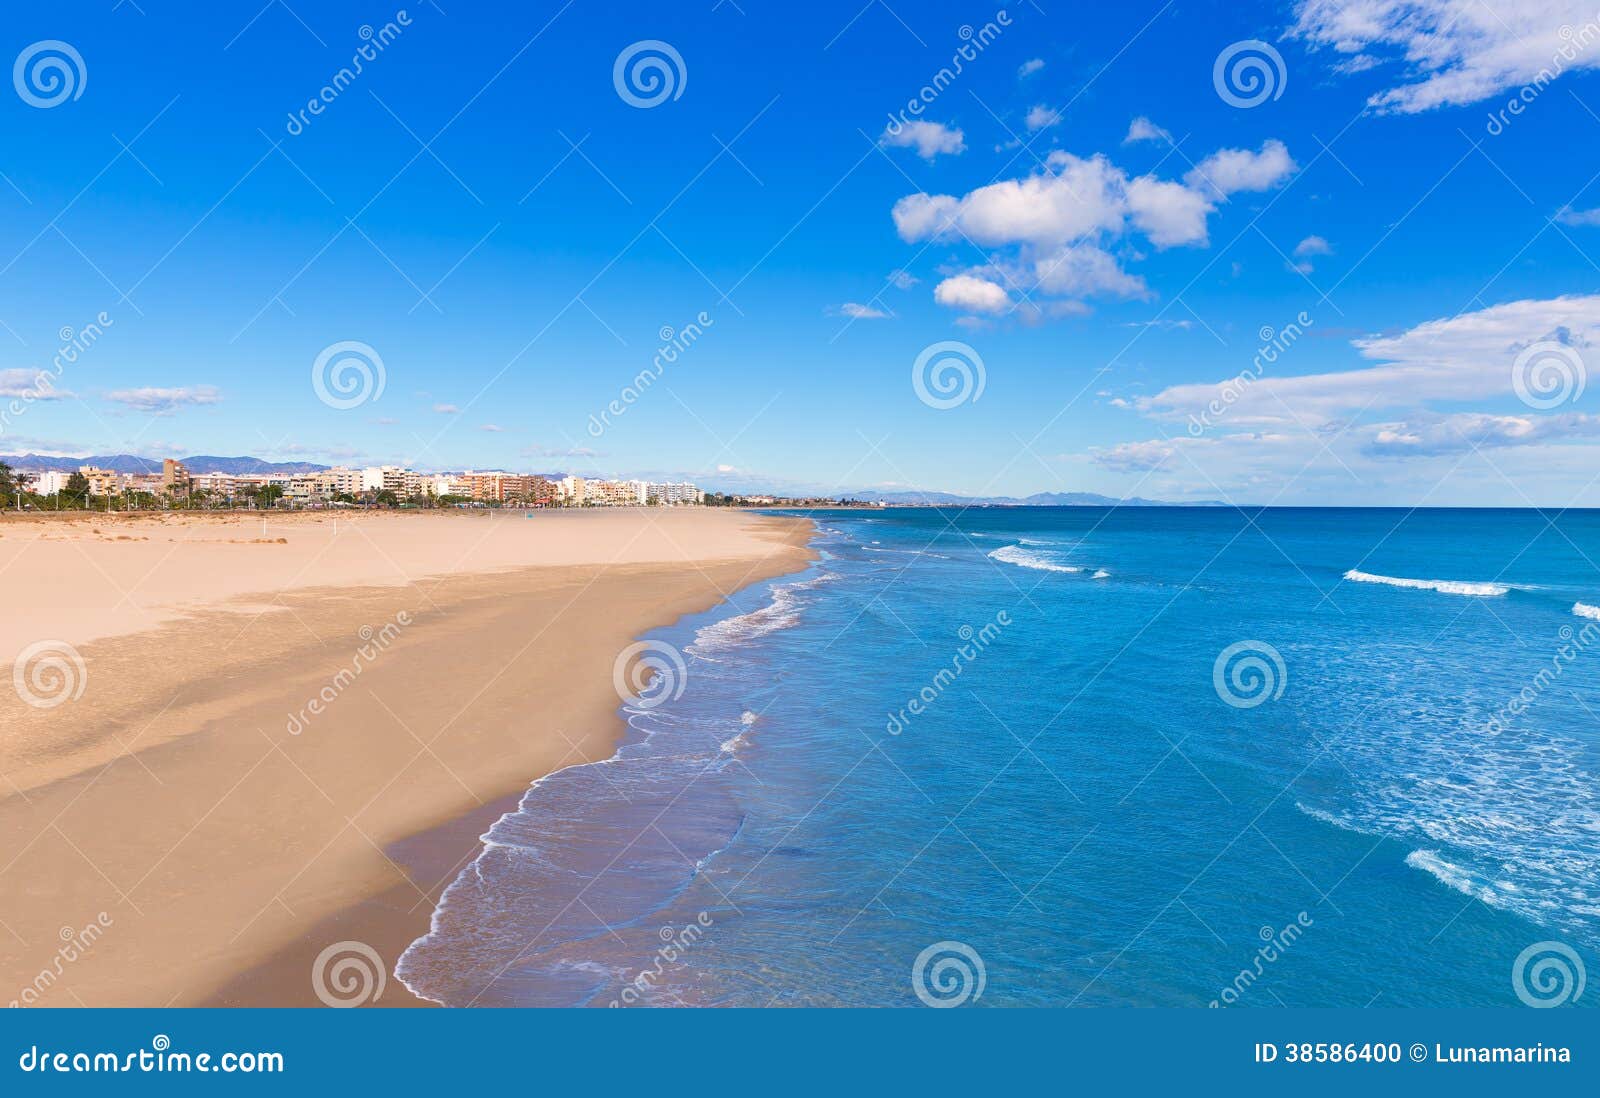 sagunto beach in valencia in sunny day in spain